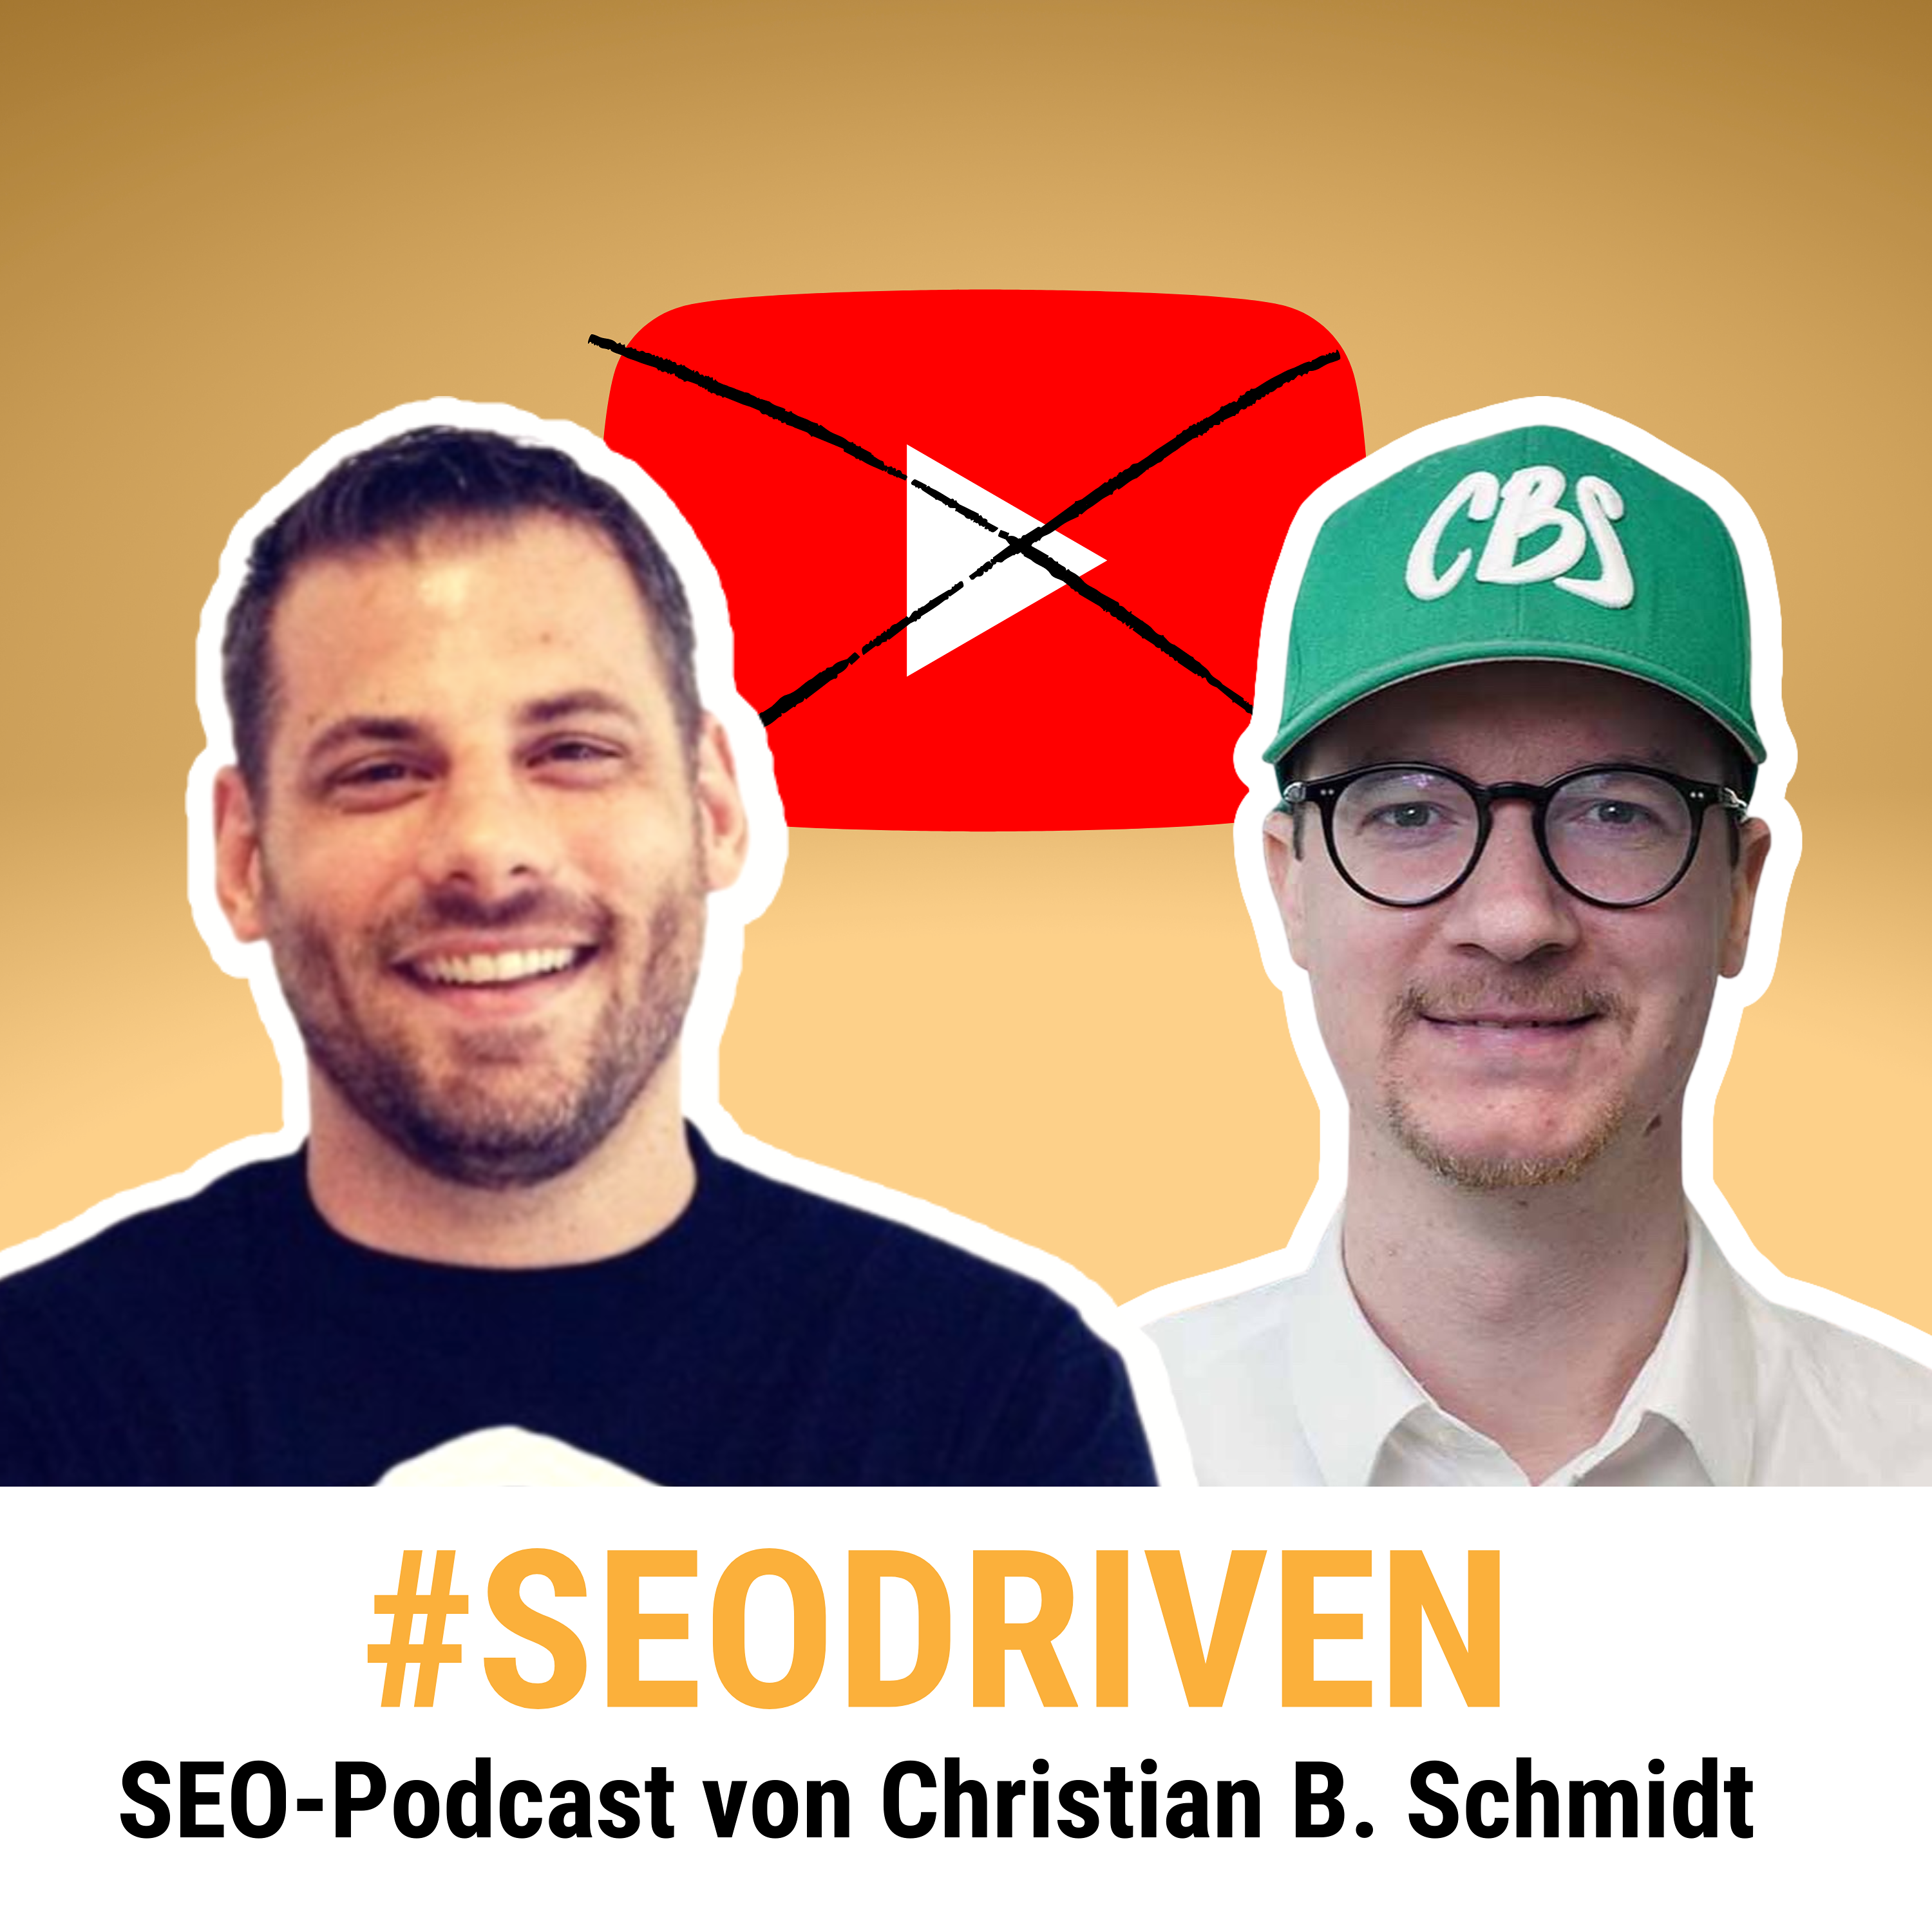 Darum gibt es keinen #SEODRIVEN Video-Podcast mehr! | Björn Darko